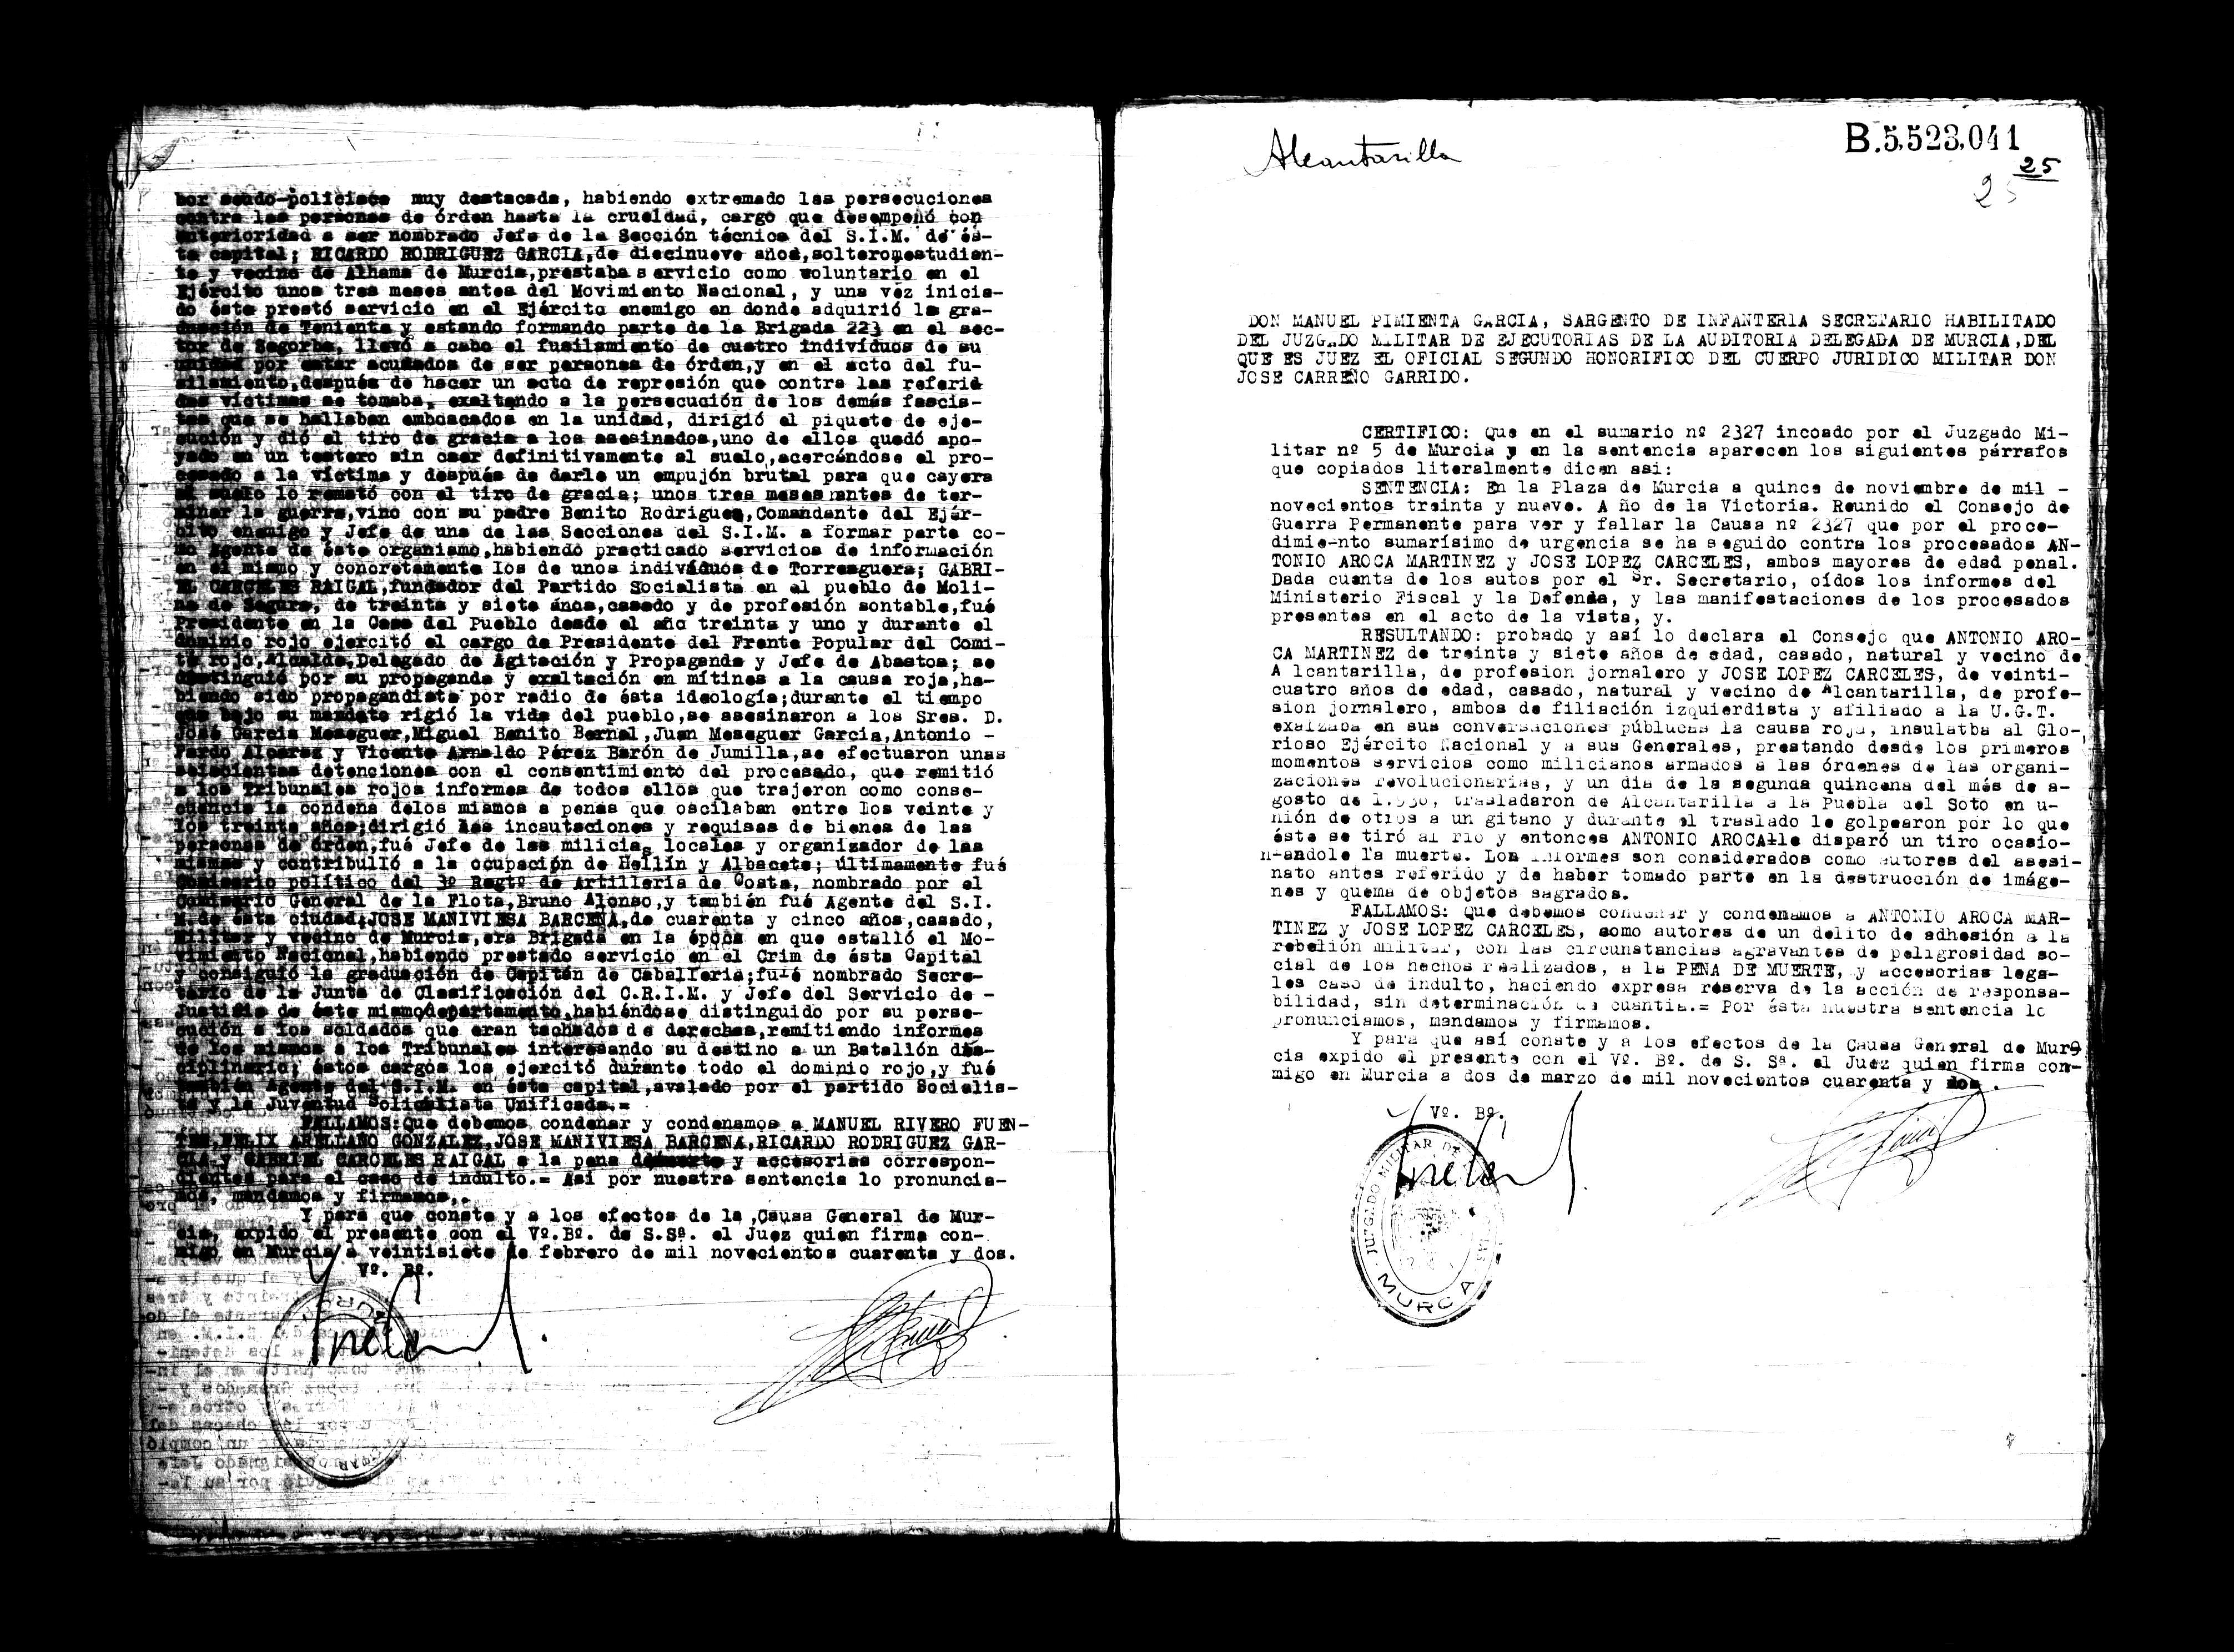 Certificado de la sentencia pronunciada contra Antonio Aroca Martínez y José López Cárceles, causa 2327, el 15 de noviembre de 1939 en Murcia.